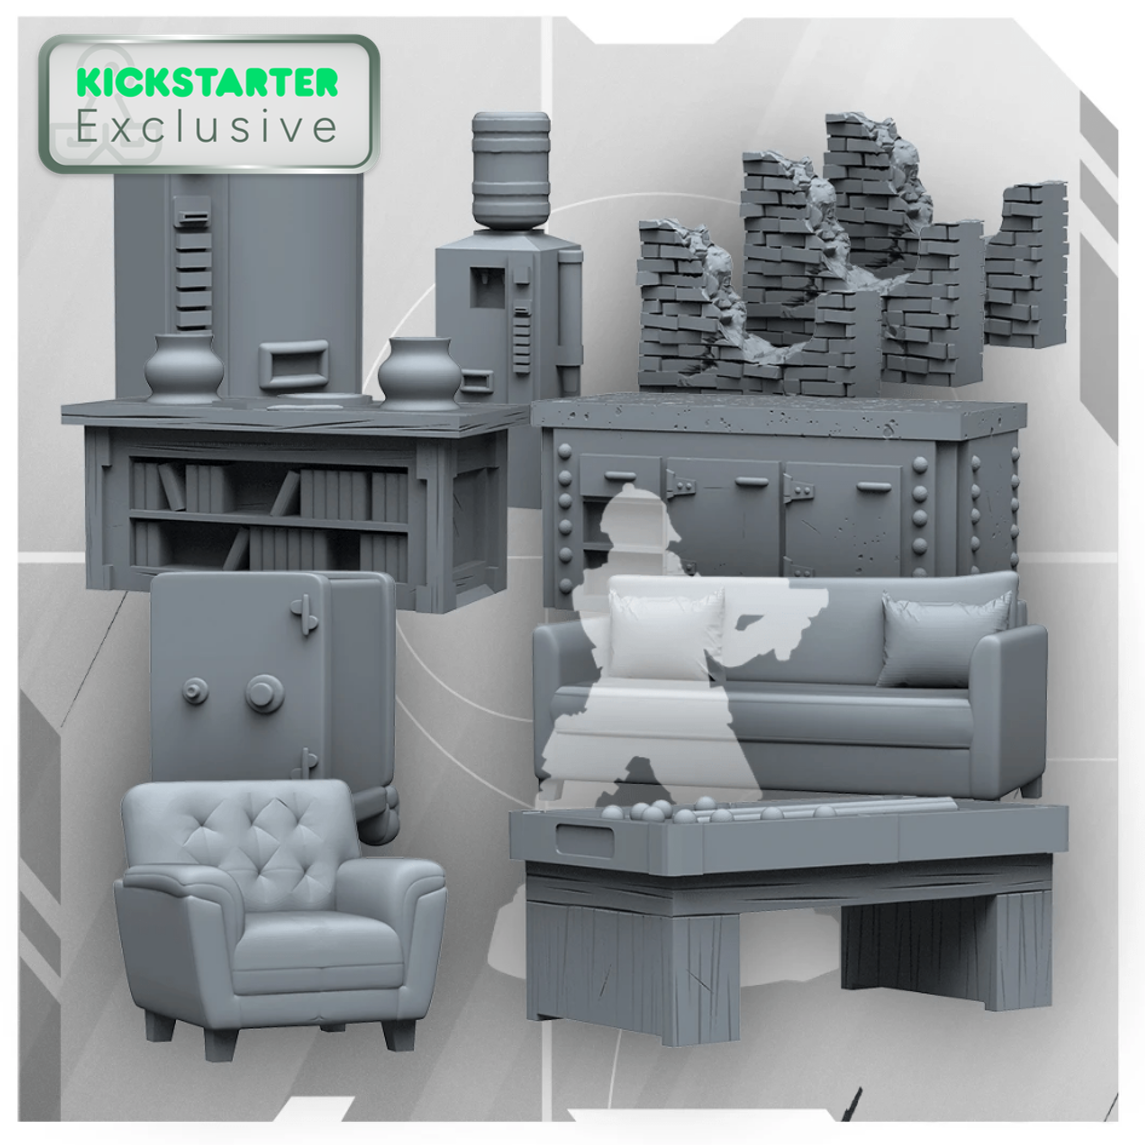 3D Scenery Set (Kickstarter Exclusive)